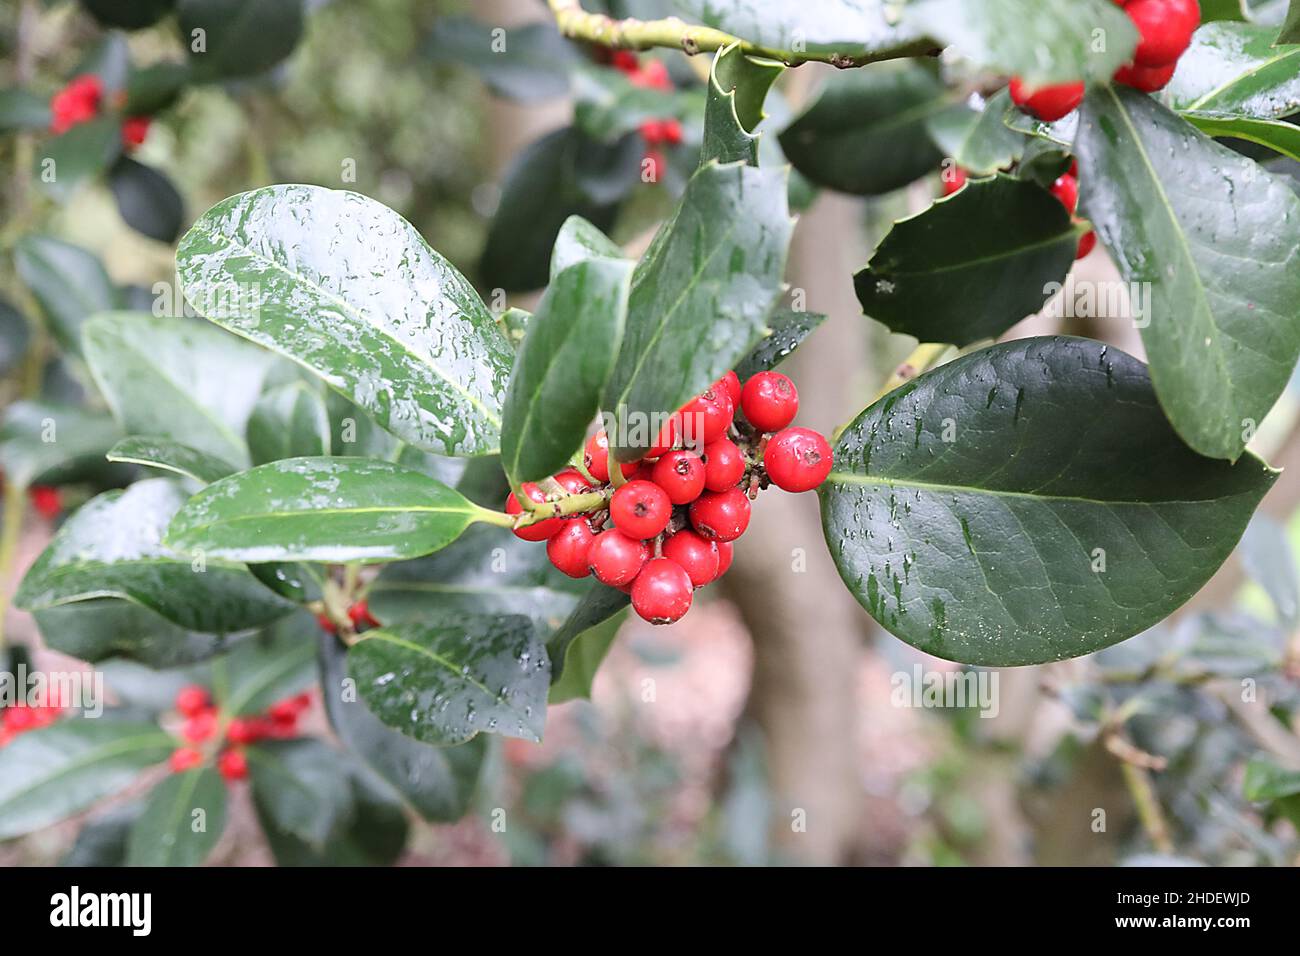 Ilex x altaclerensis Hendersonii Holly Hendersonii – fitti gruppi di bacche rosse e foglie verdi scure lucide, gennaio, Inghilterra, Regno Unito Foto Stock